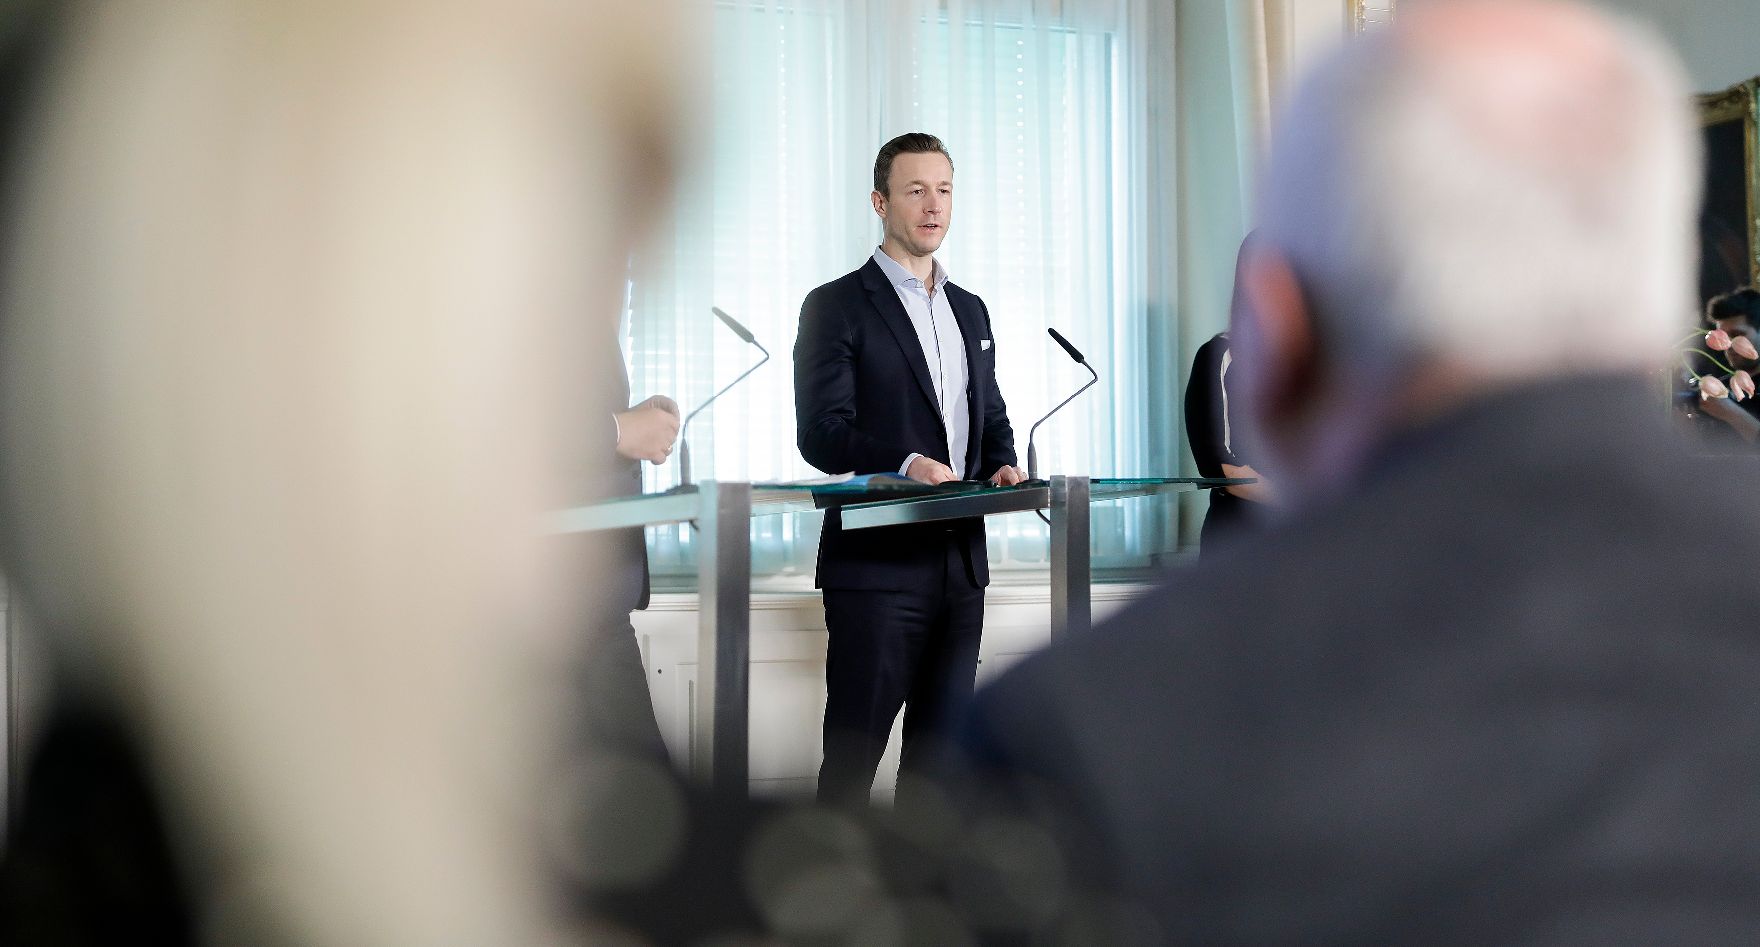 Am 18. März 2019 fand eine Pressekonferenz zum Thema "Weltkulturerbe Wien" im Bundeskanzleramt statt. Im Bild Bundesminister Gernot Blümel.